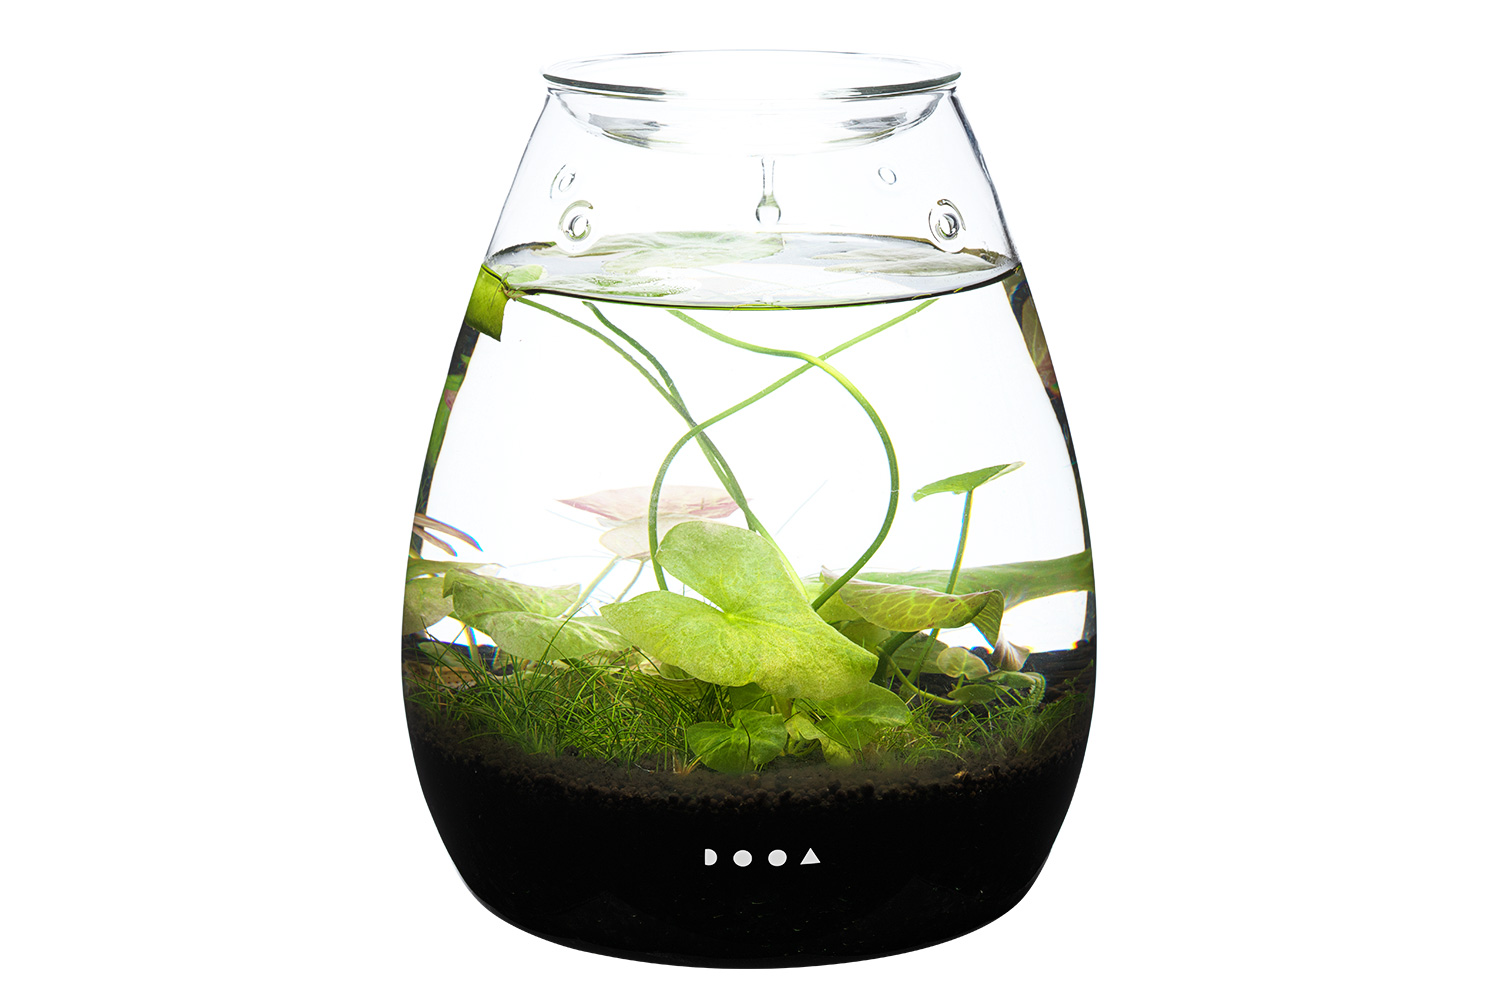 dooa glasspot shizuku セット - 魚用品/水草